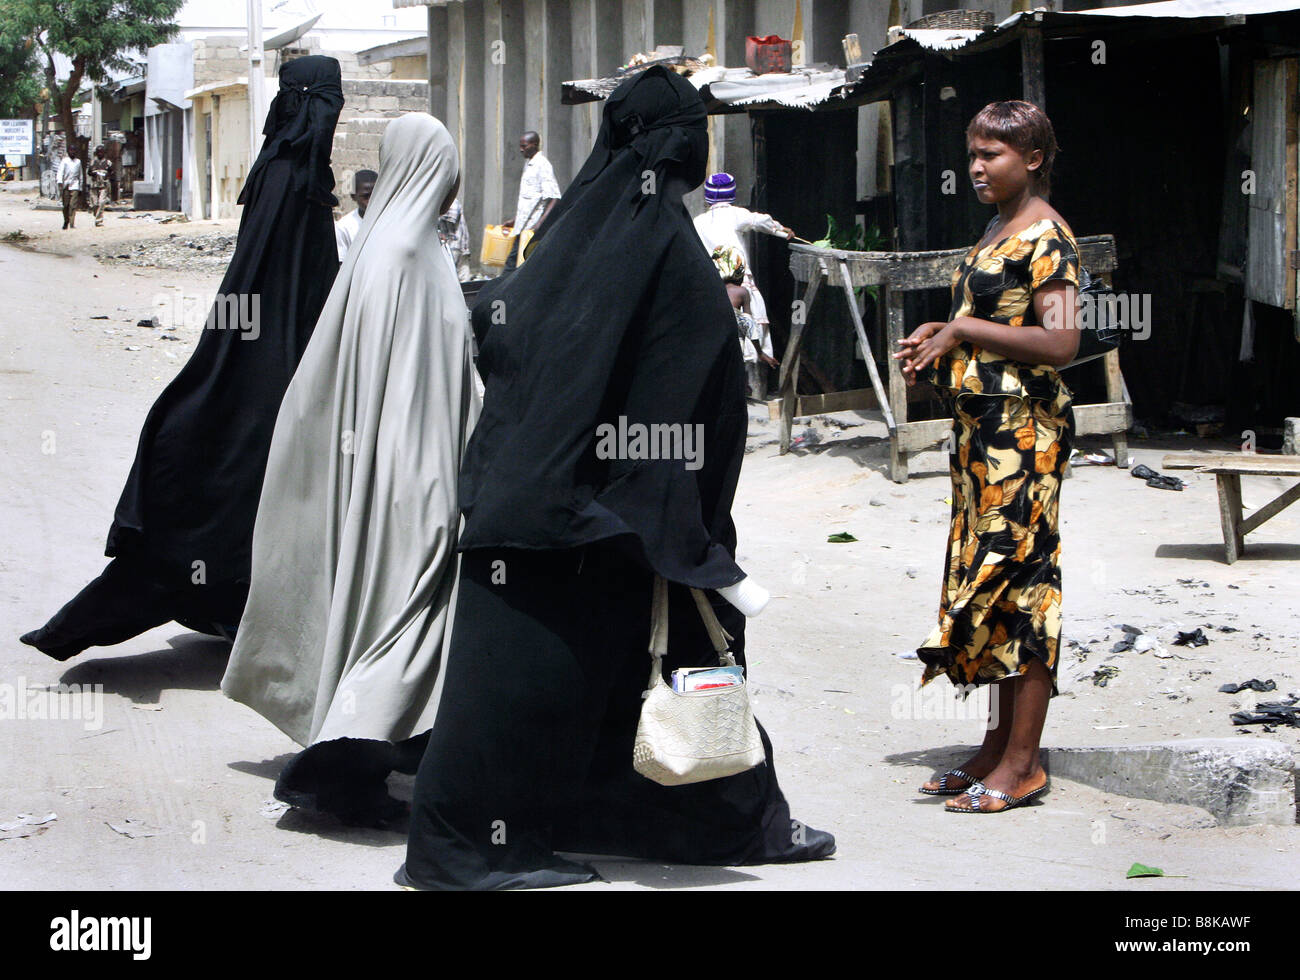 Un sceptique à la femme chrétienne moderne habillé en regardant les femmes musulmanes portant un corps plein de Burka. Maiduguri, l'État de Borno, Nigeria Banque D'Images